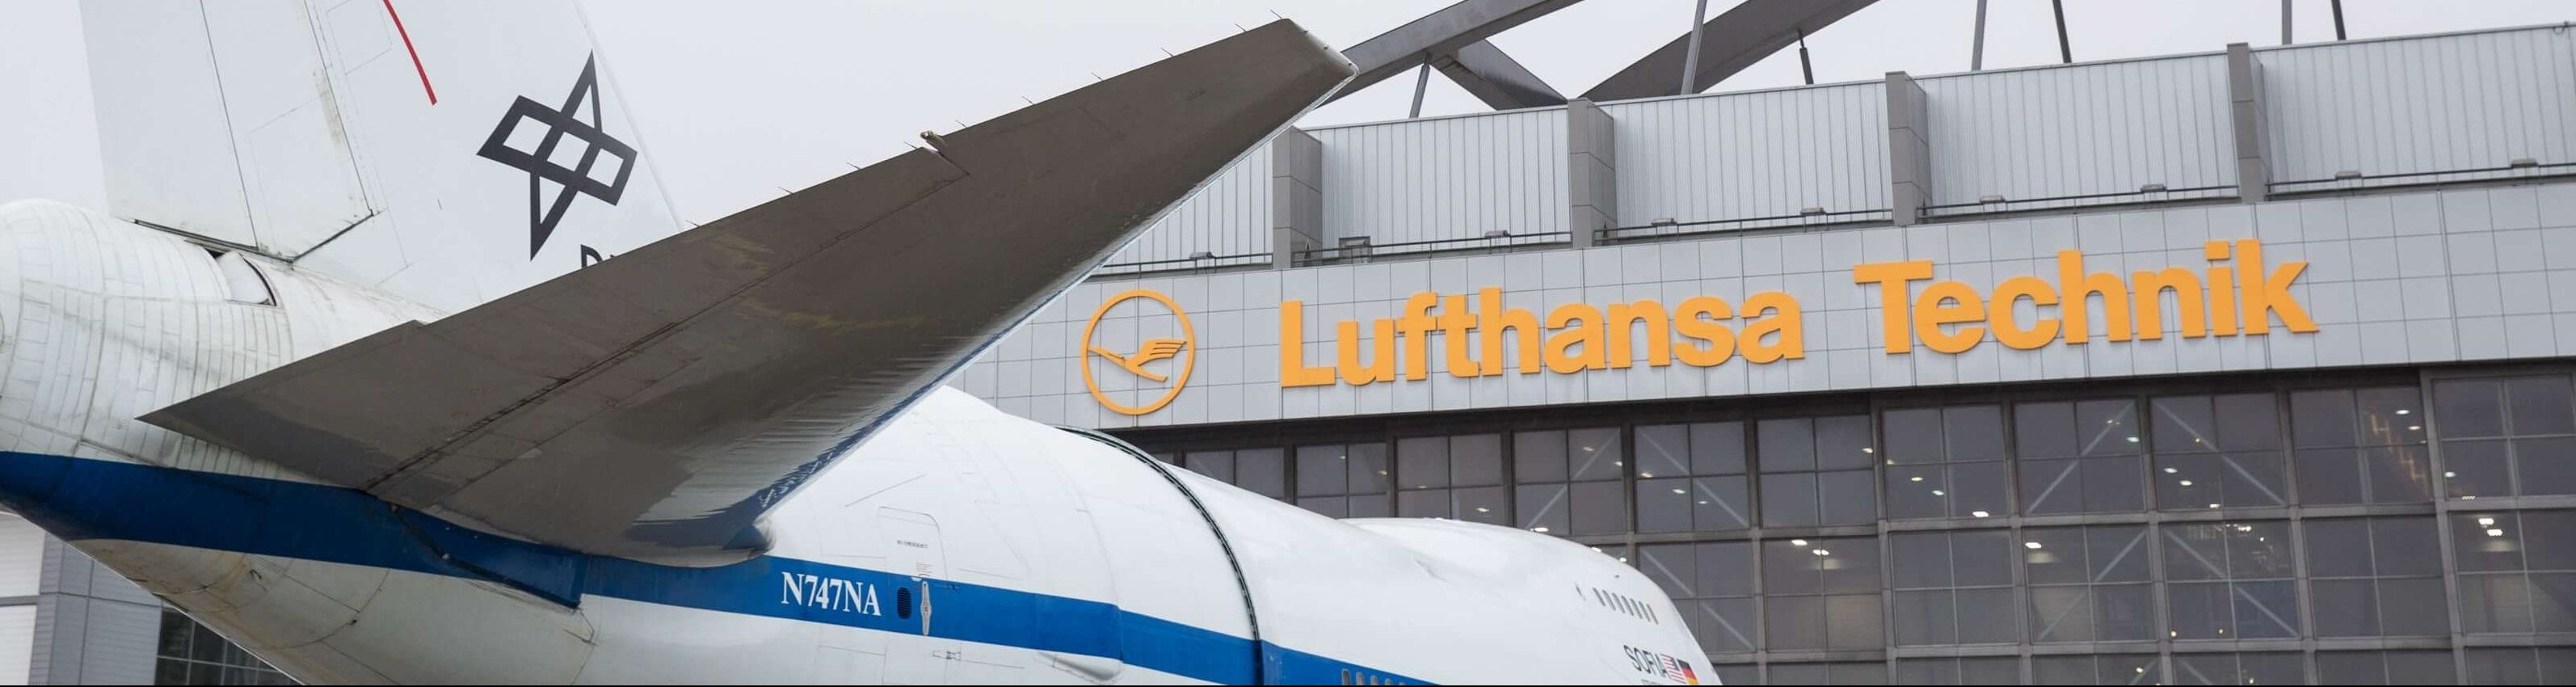 Lufthansa Technik offers 787 landing gear services